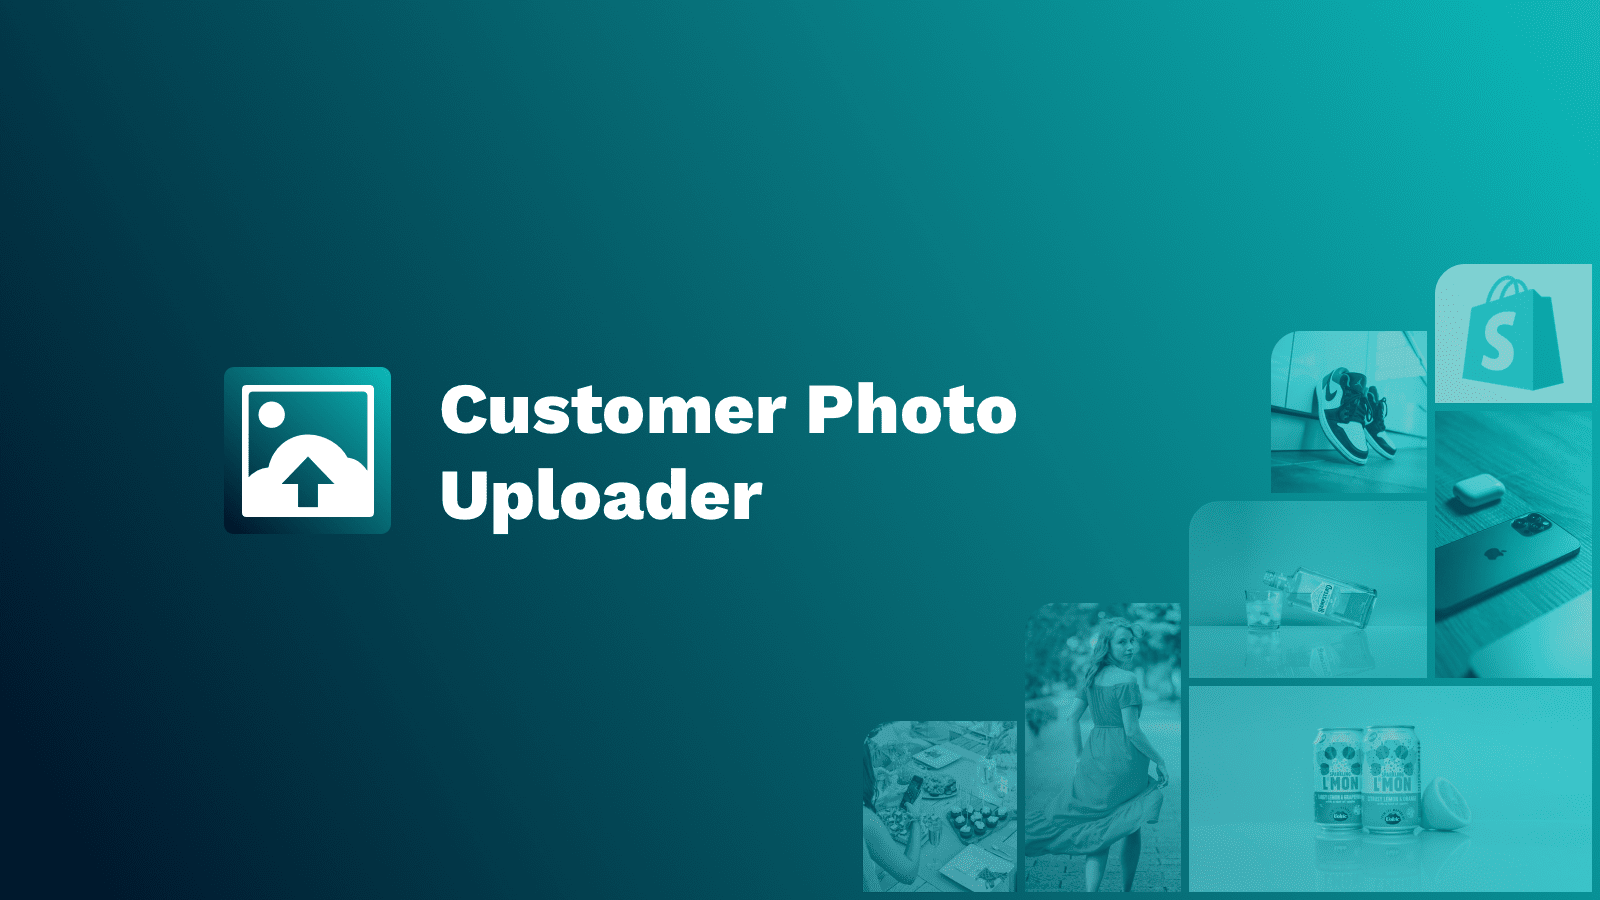 Klantenfoto uploader app voor afbeeldingen gemaakt door klanten